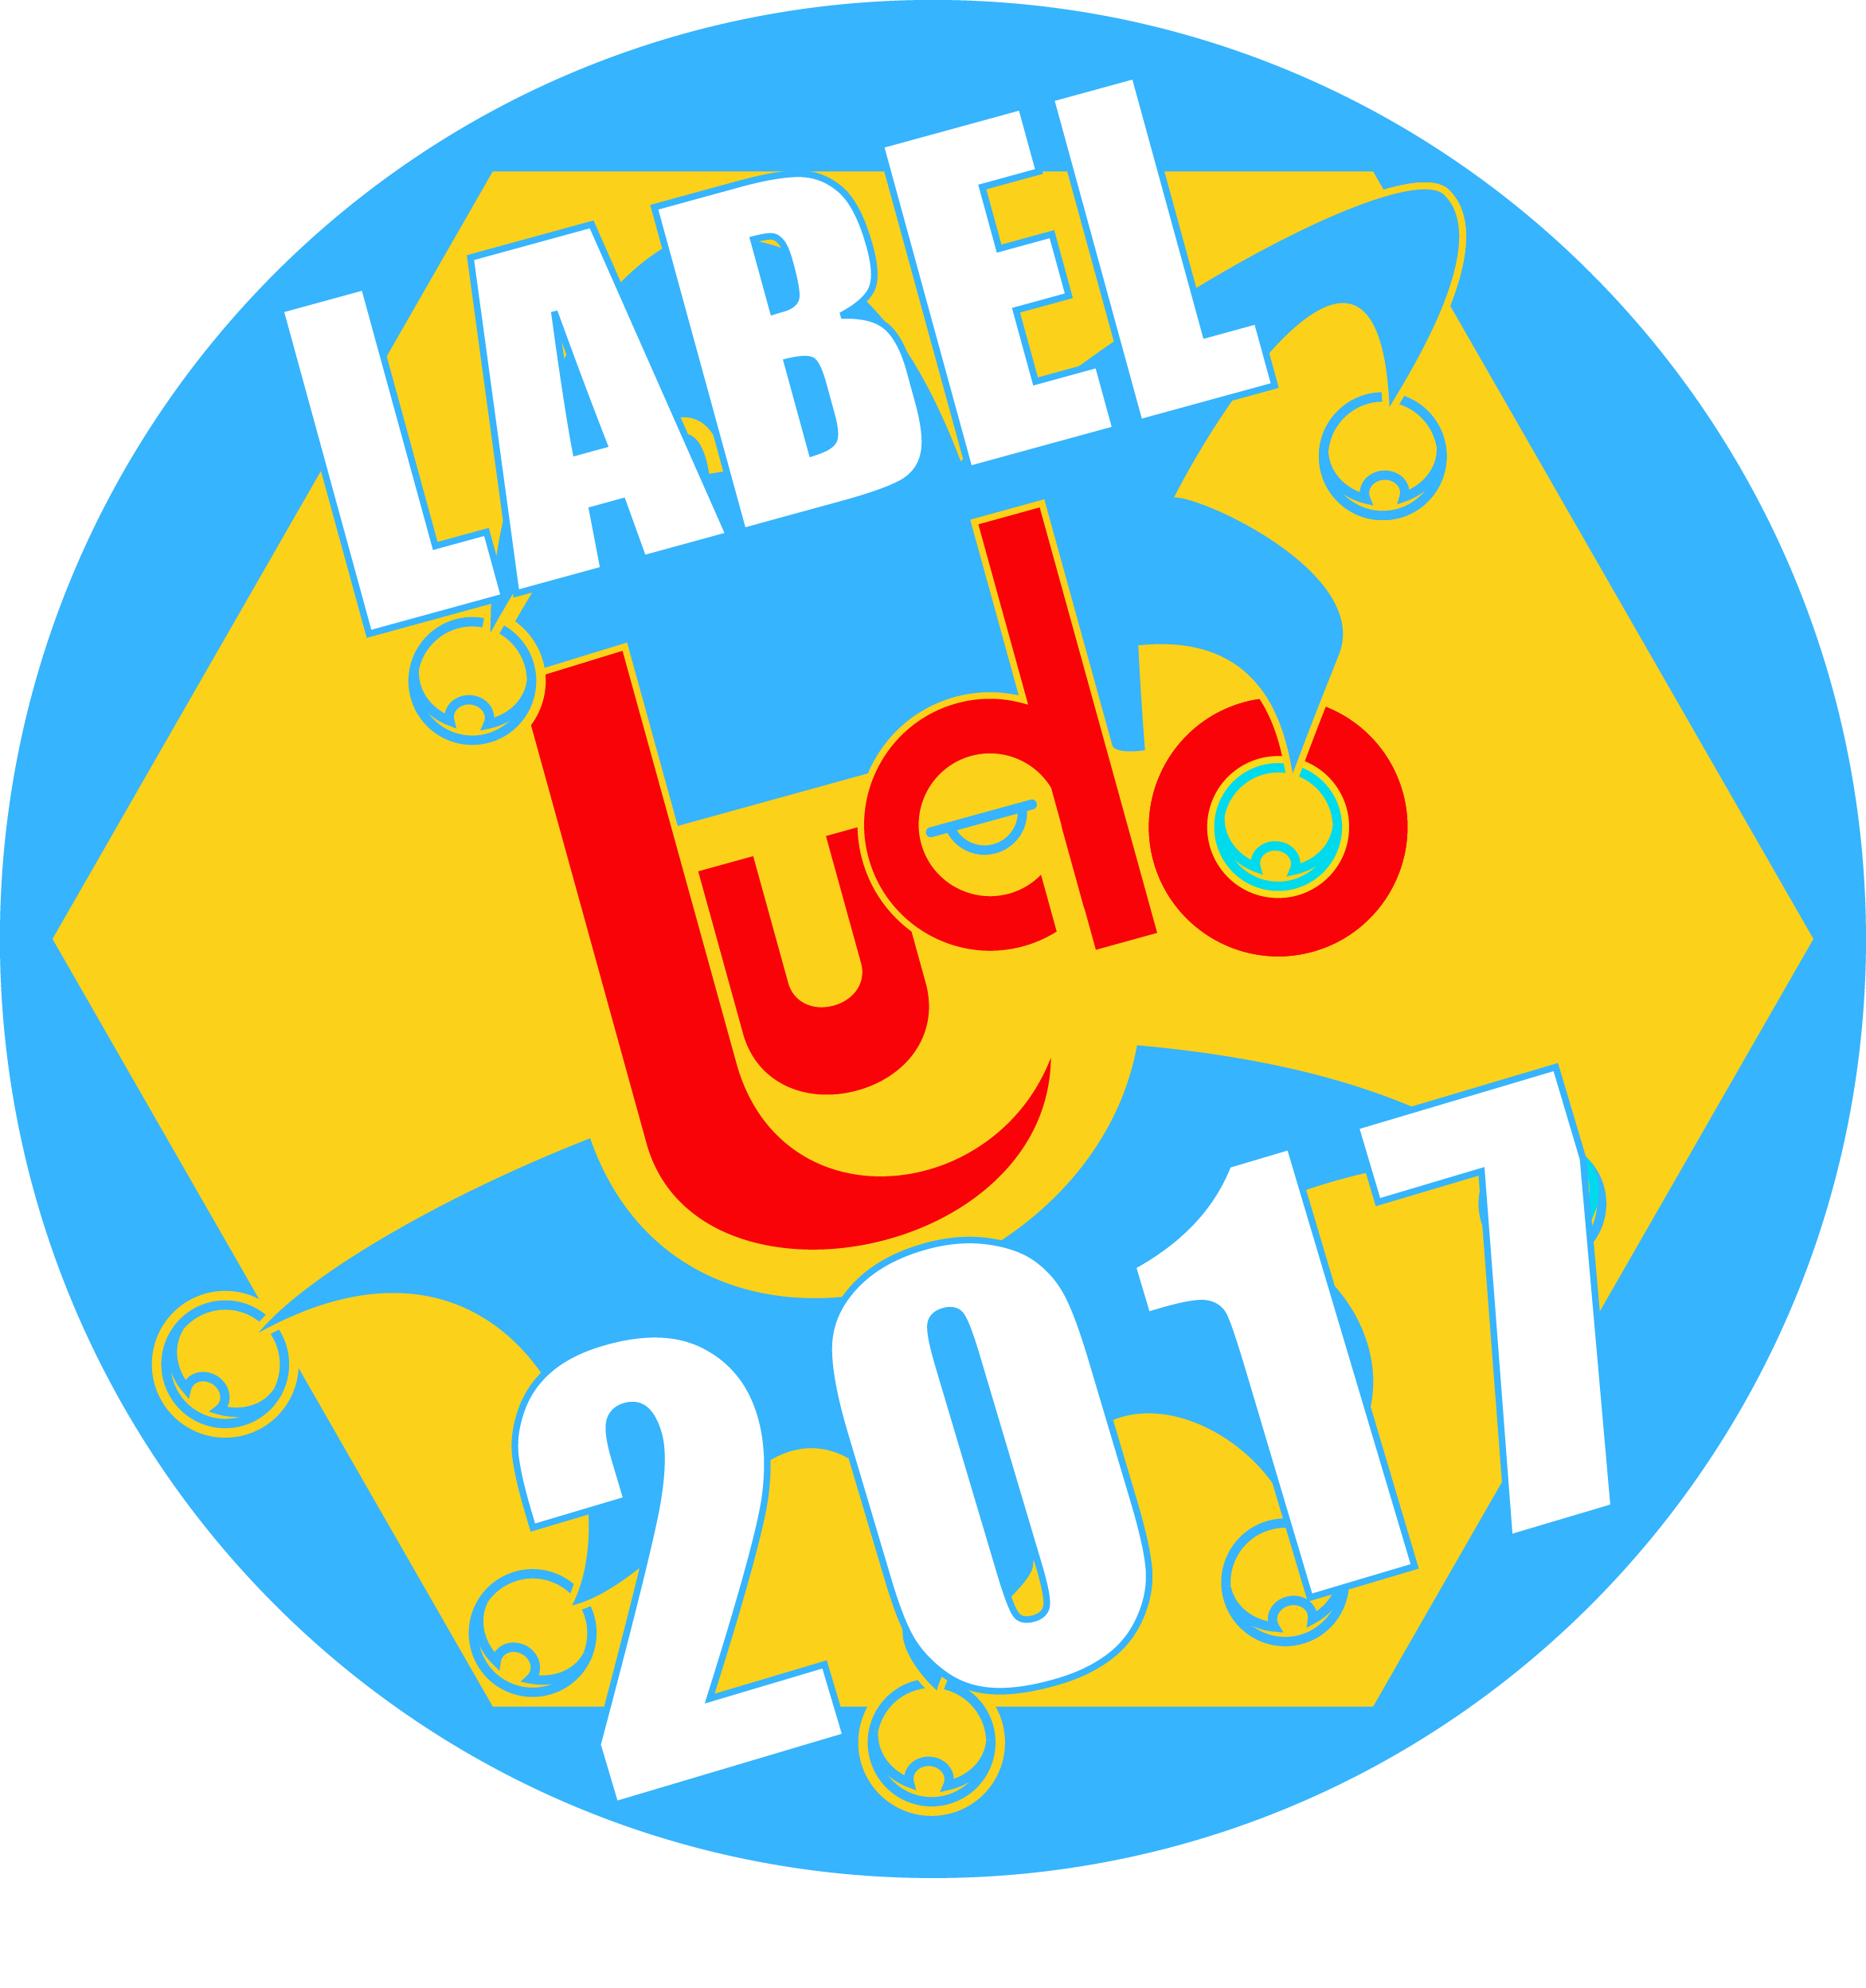 Label Ludo 2017 – Les finalistes sont…